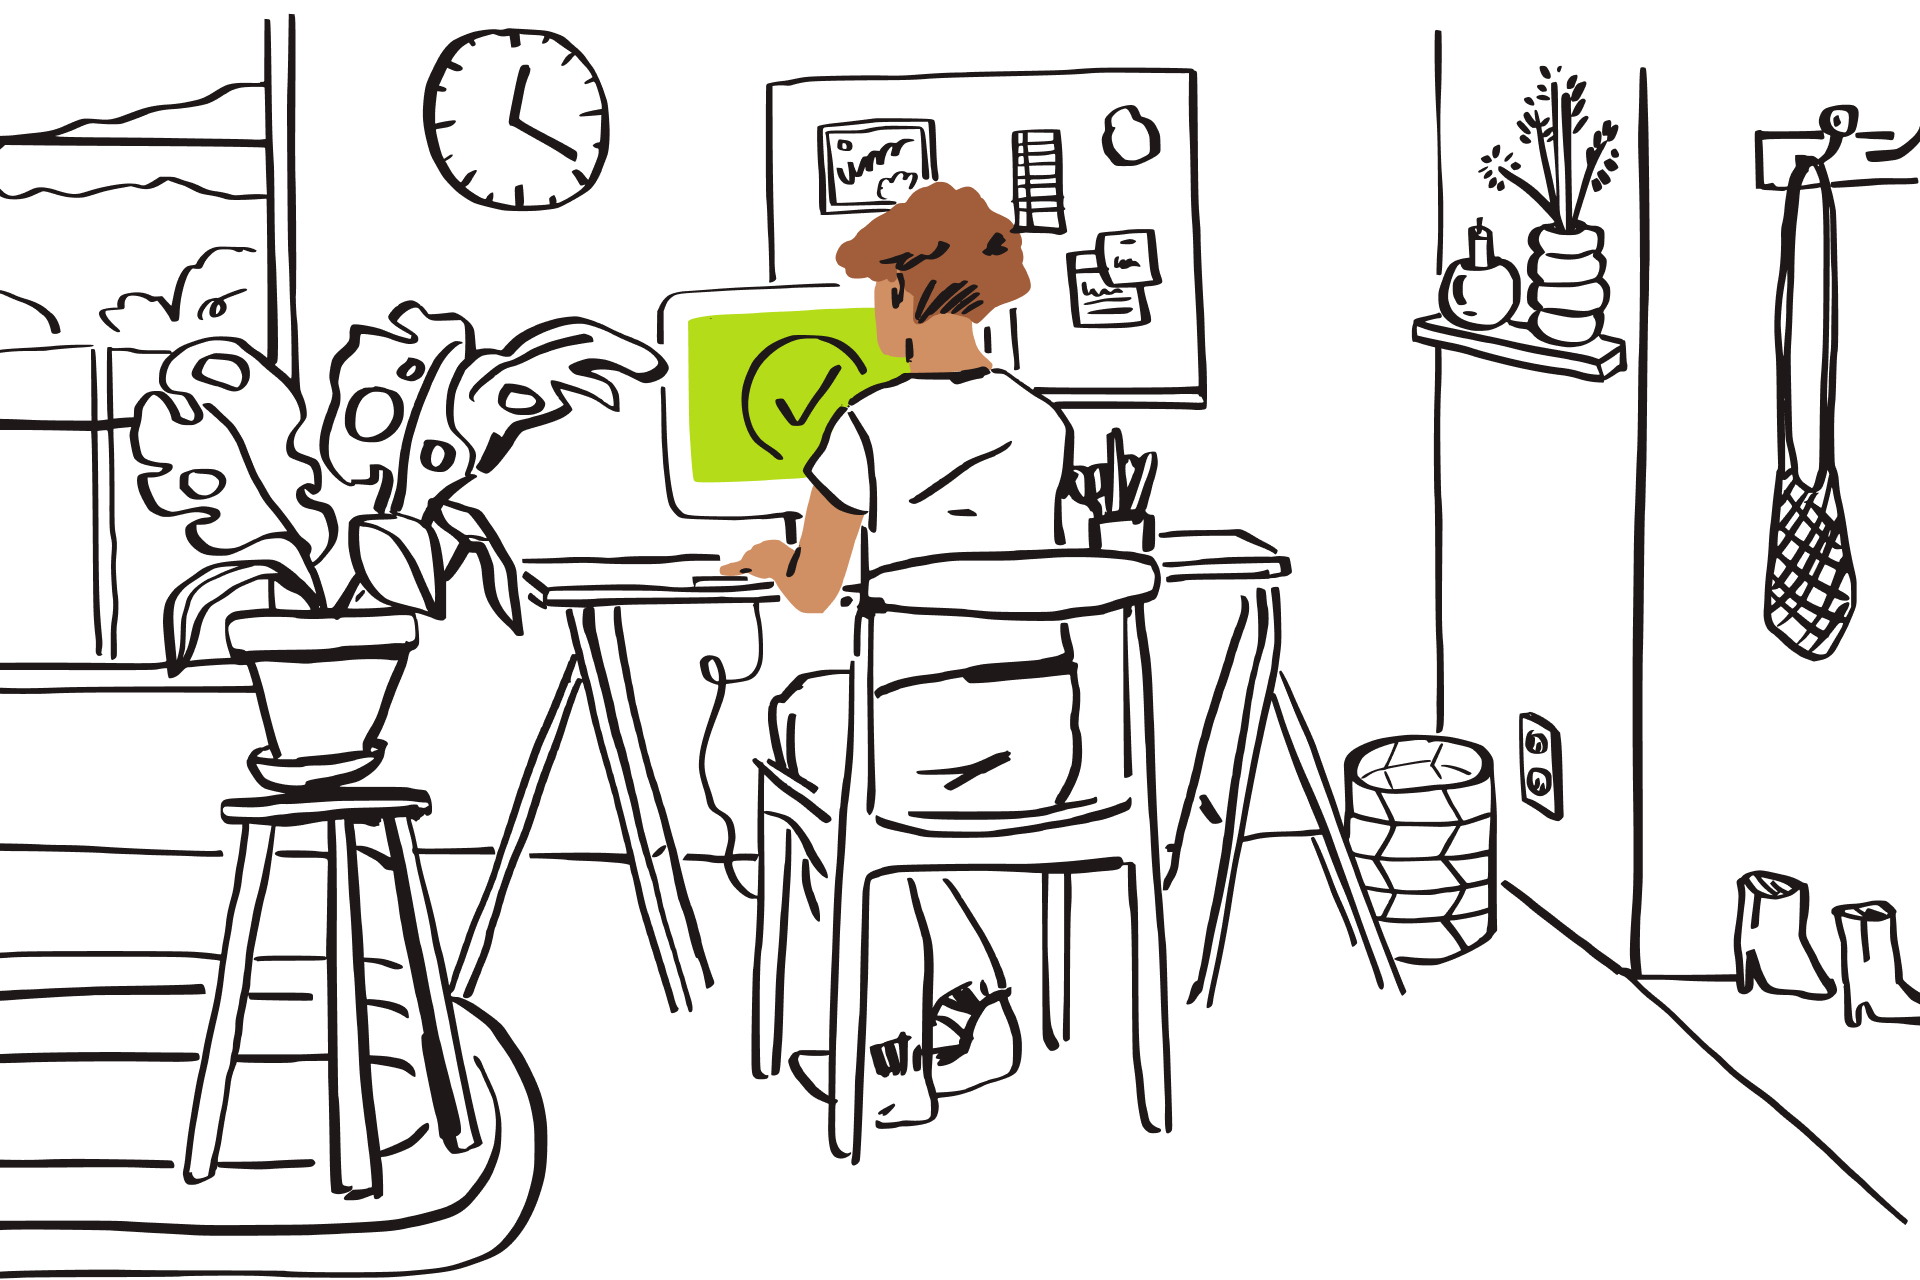 一间房间的黑线插图，一个人坐在电脑前打字，屏幕是绿色的，还有个勾号图标